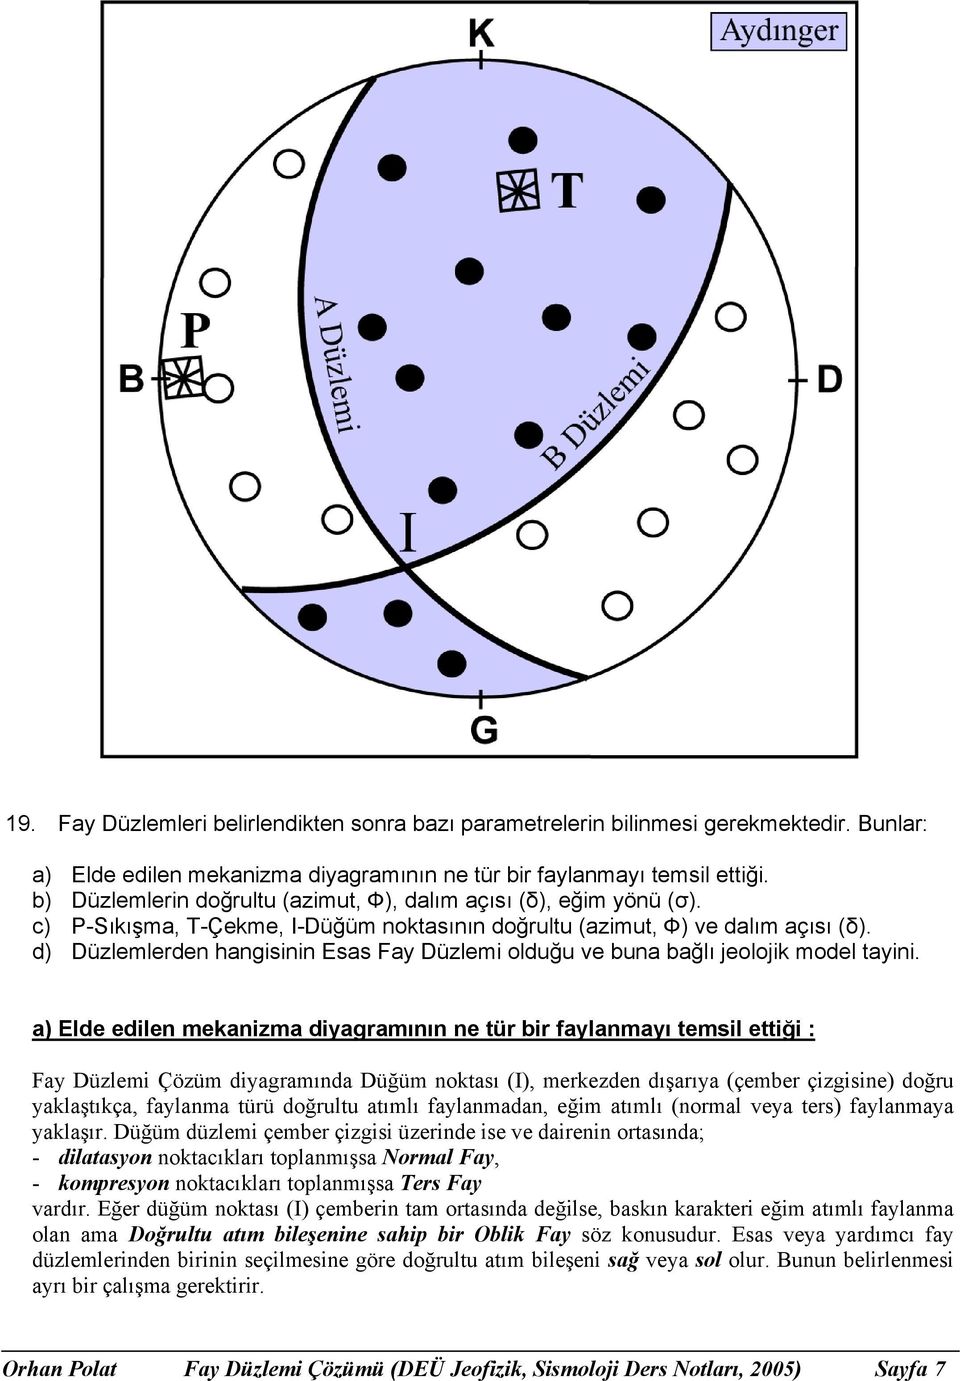 d) Düzlemlerden hangisinin Esas Fay Düzlemi olduğu ve buna bağlı jeolojik model tayini.